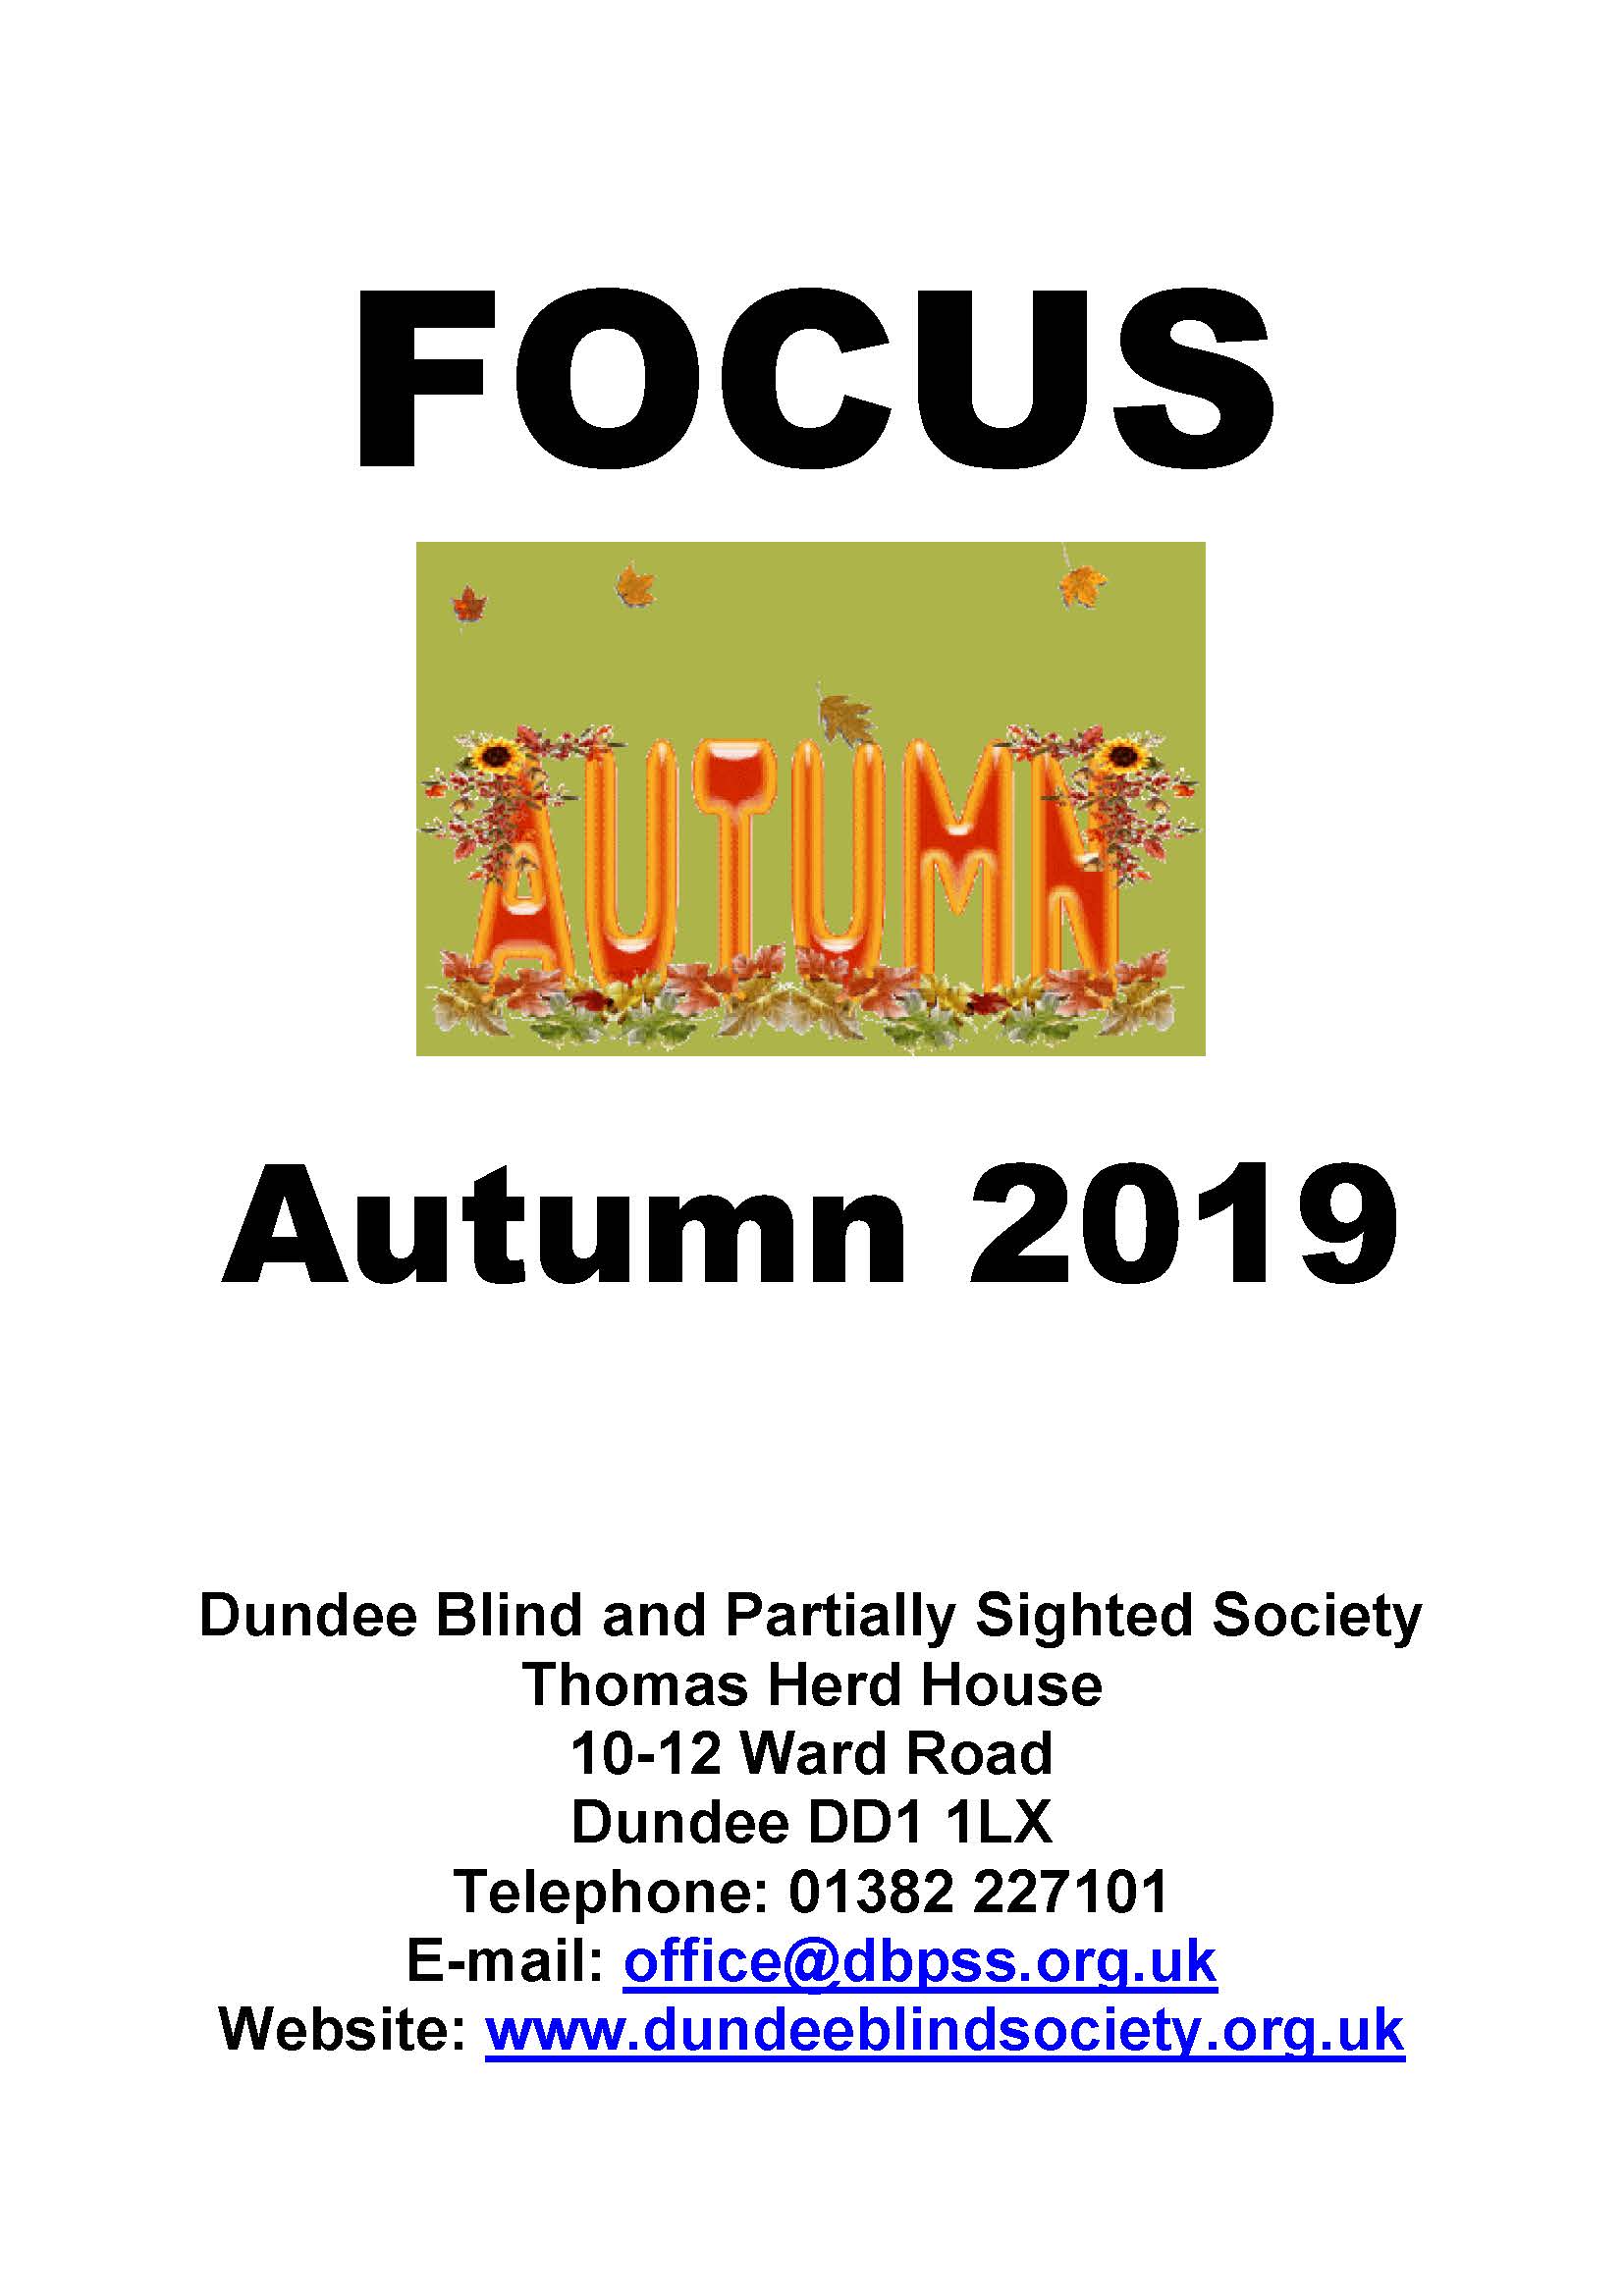 Autumn 2019 Newsletter